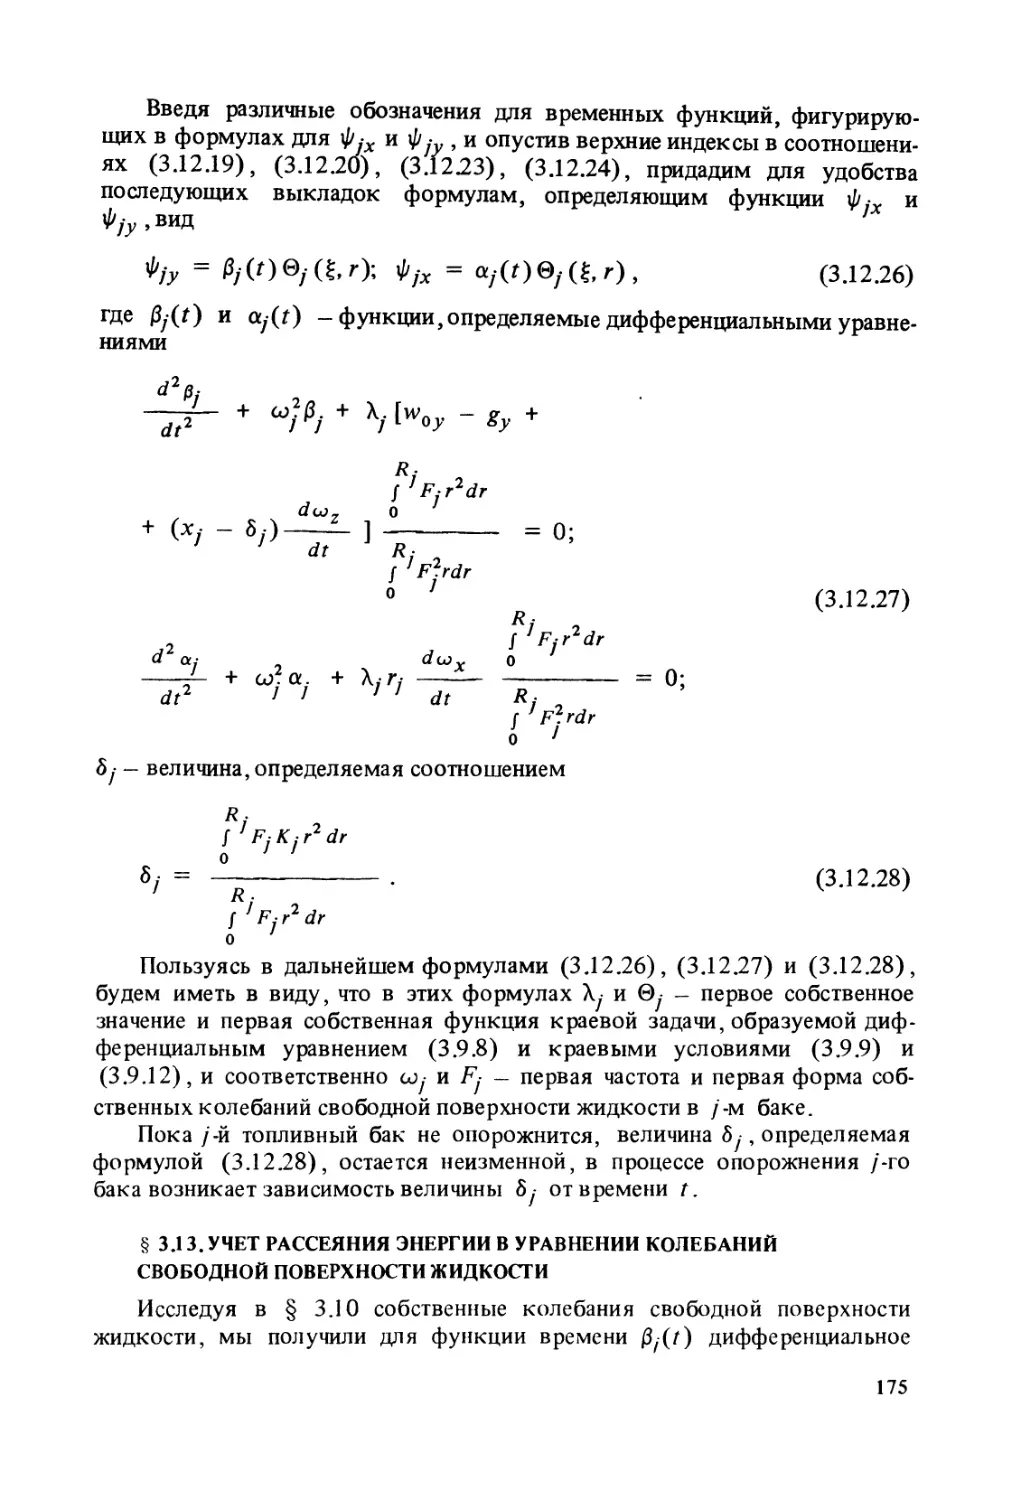 § 3.13. Учет рассеяния энергии в уравнении колебаний свободной поверхности жидкости